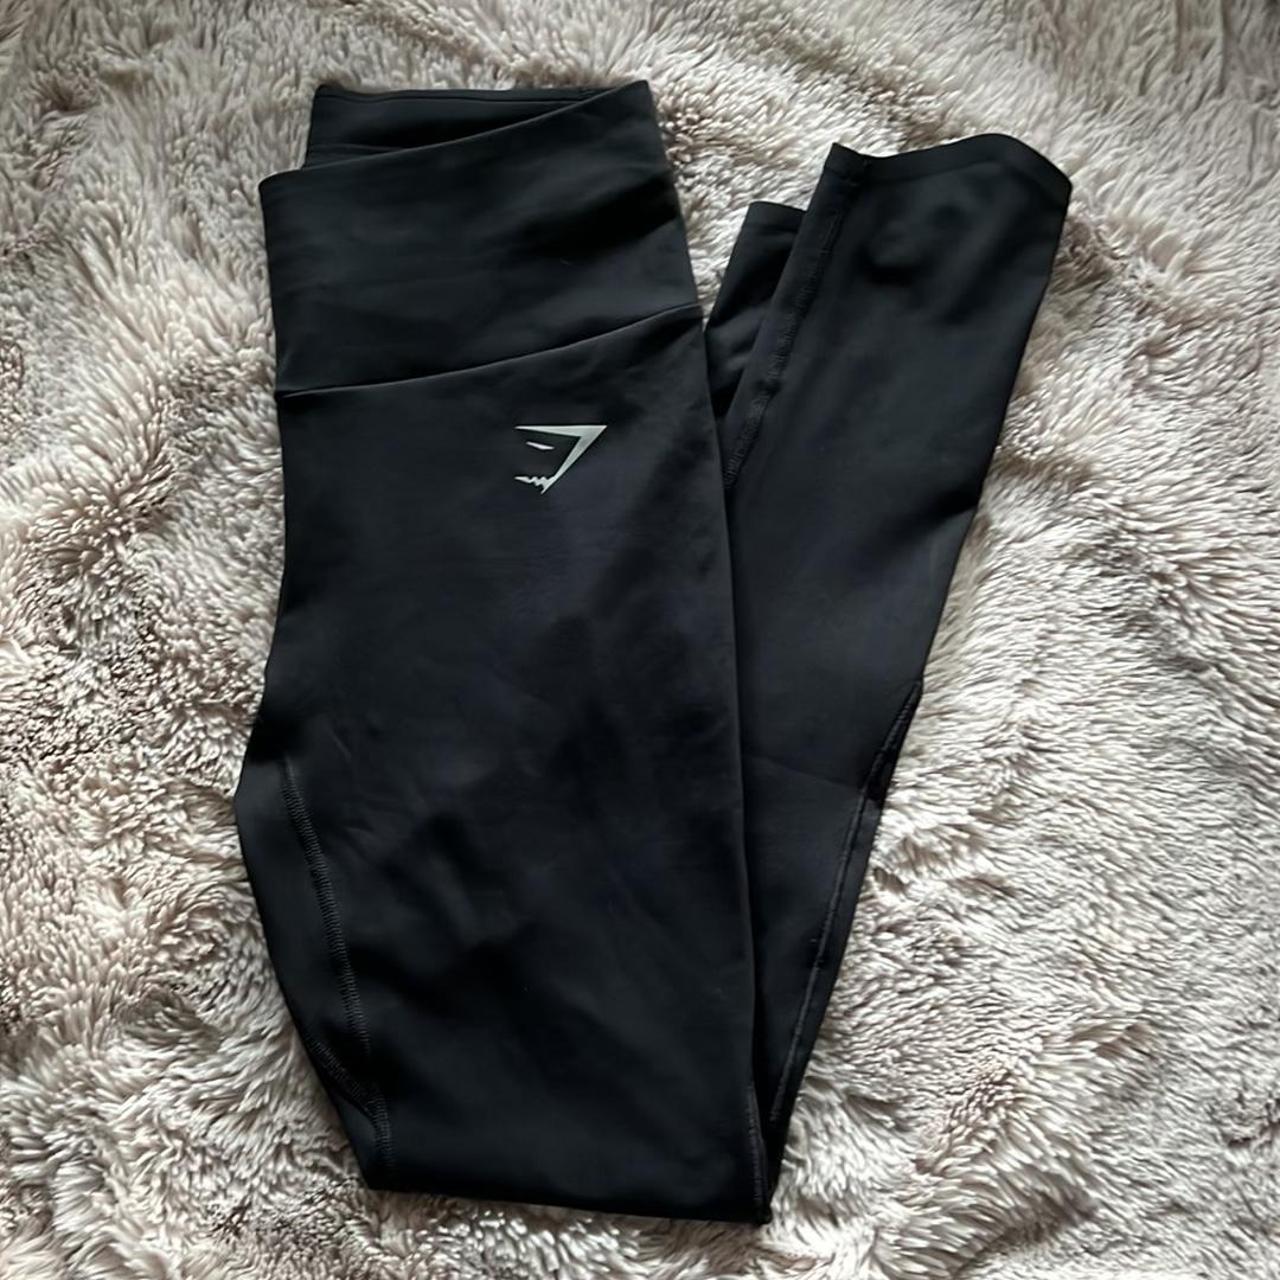 Gymshark black speed leggings size small women’s.